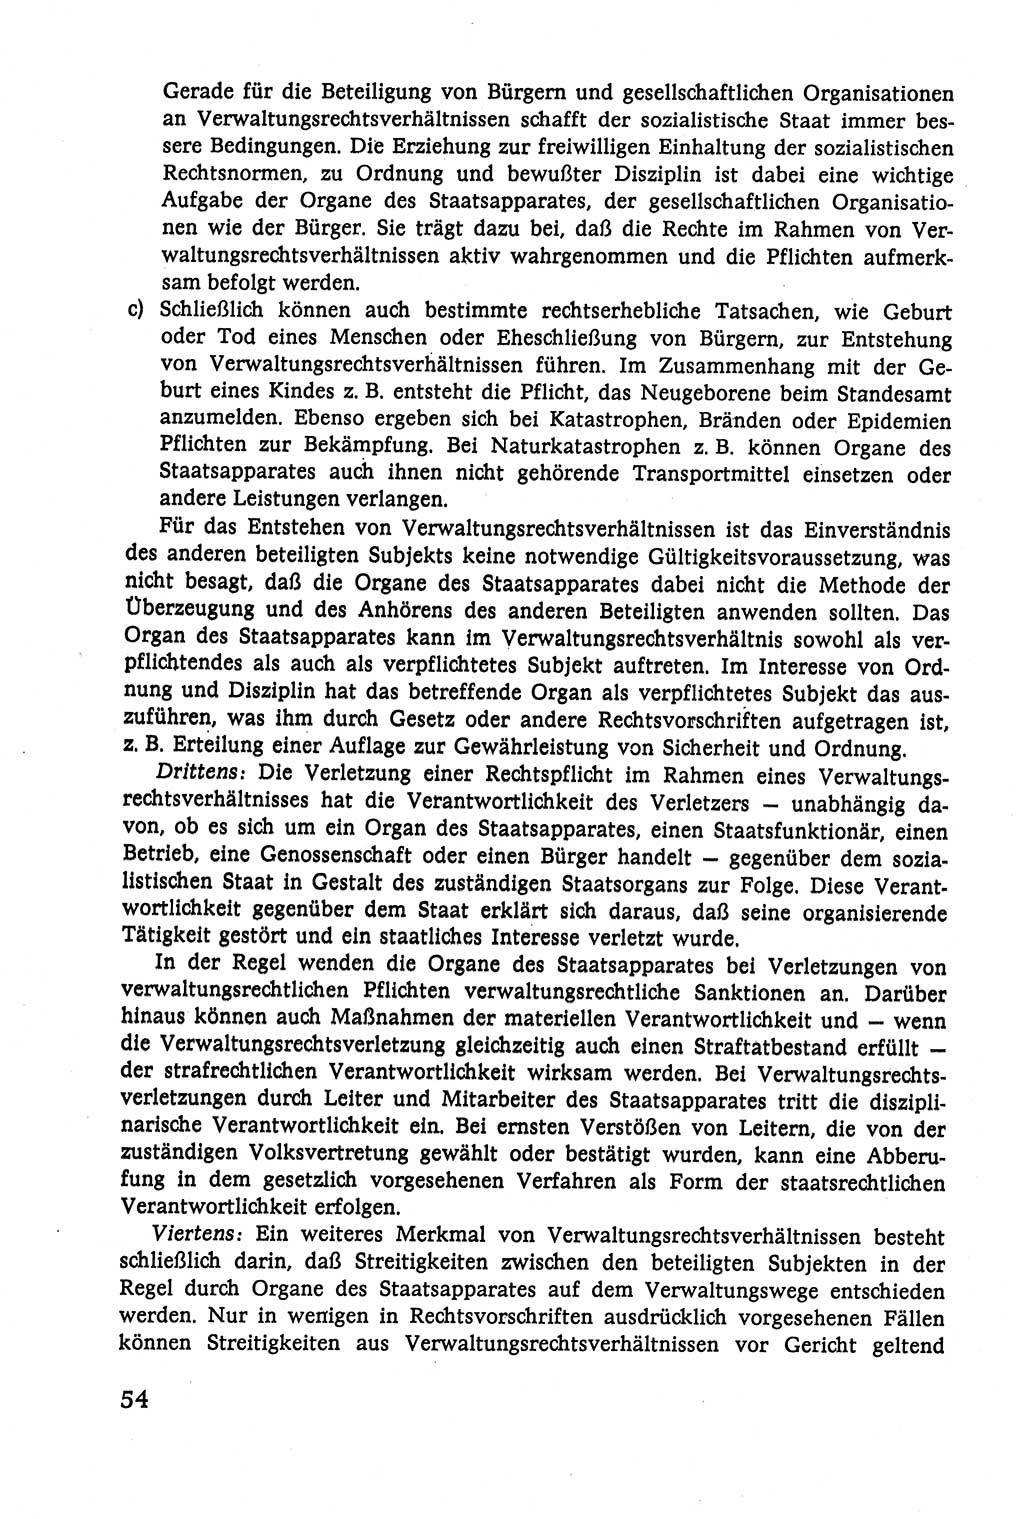 Verwaltungsrecht [Deutsche Demokratische Republik (DDR)], Lehrbuch 1979, Seite 54 (Verw.-R. DDR Lb. 1979, S. 54)